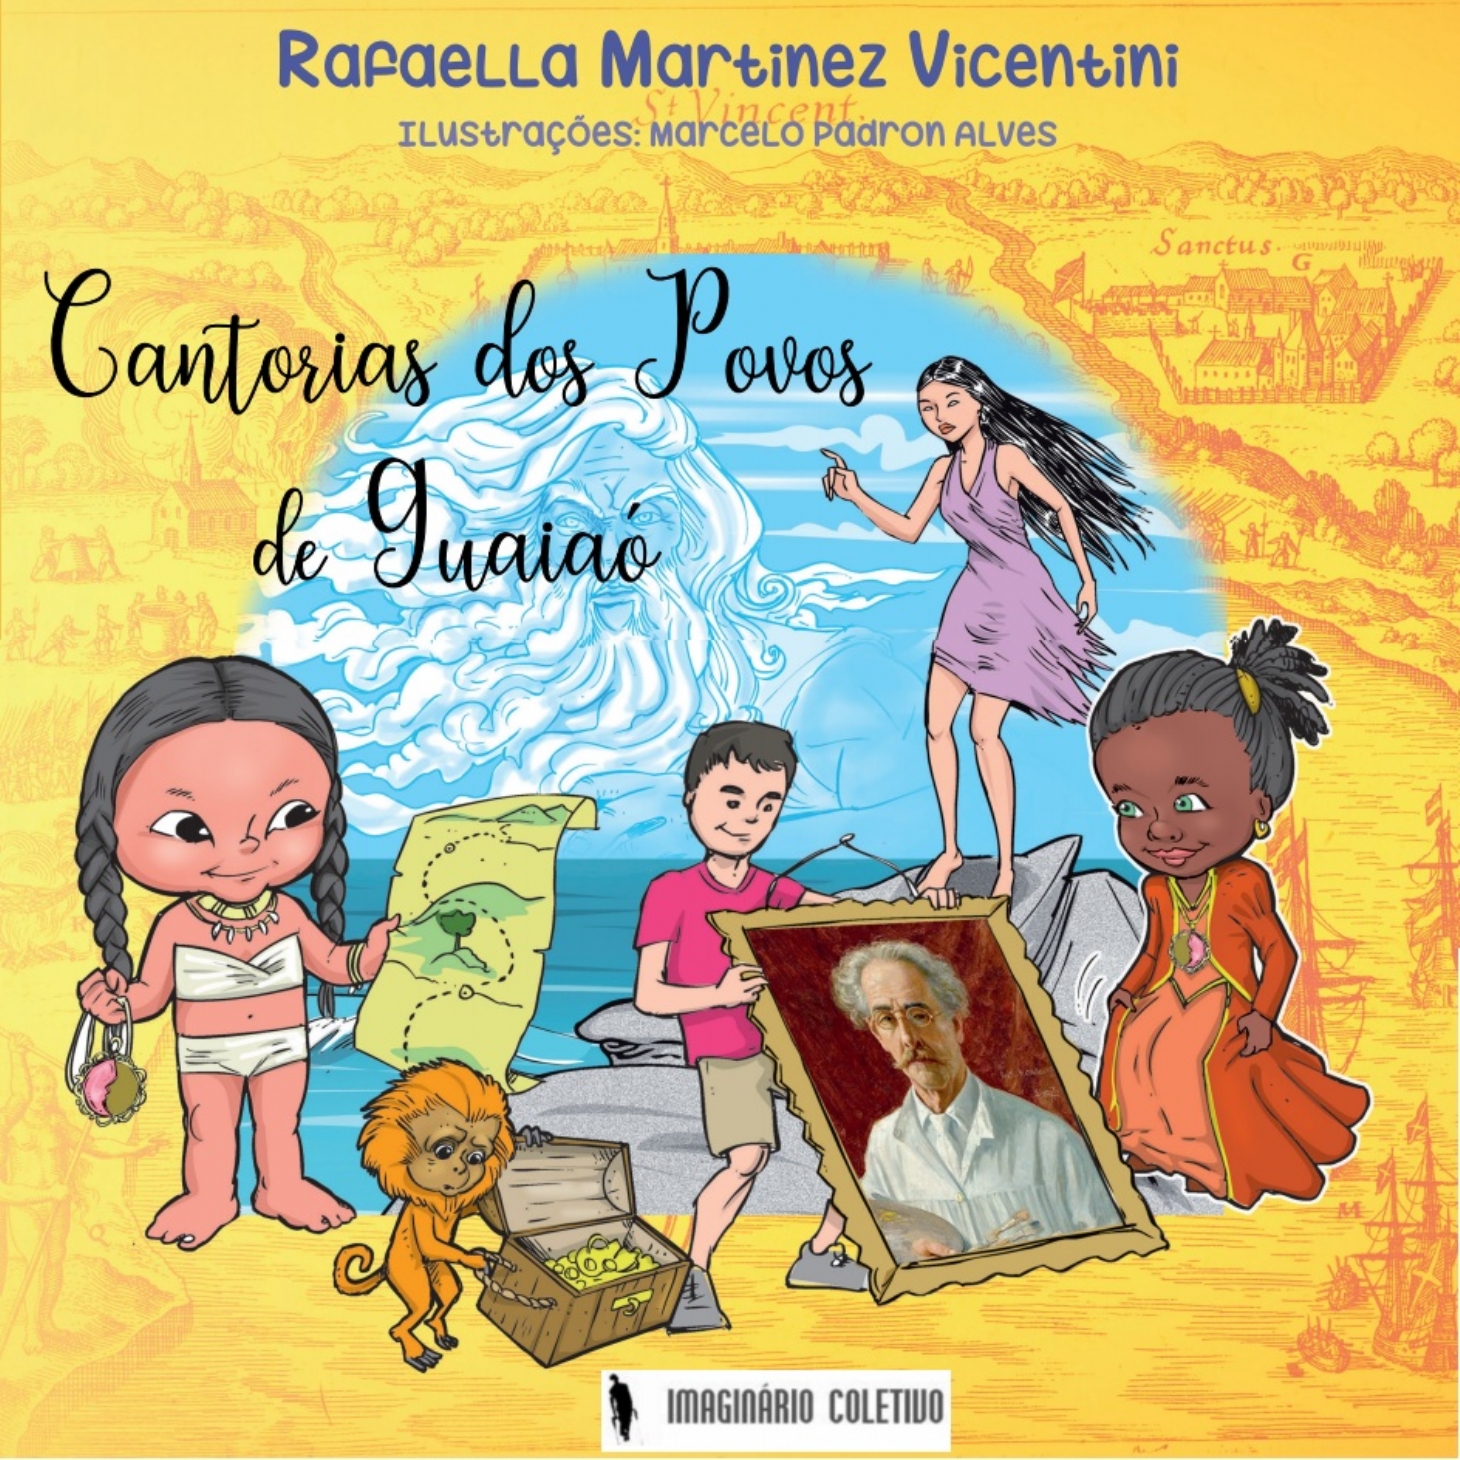 Mistério e aventuras estão em livro infanto-juvenil sobre lendas de São Vicente | Jornal da Orla